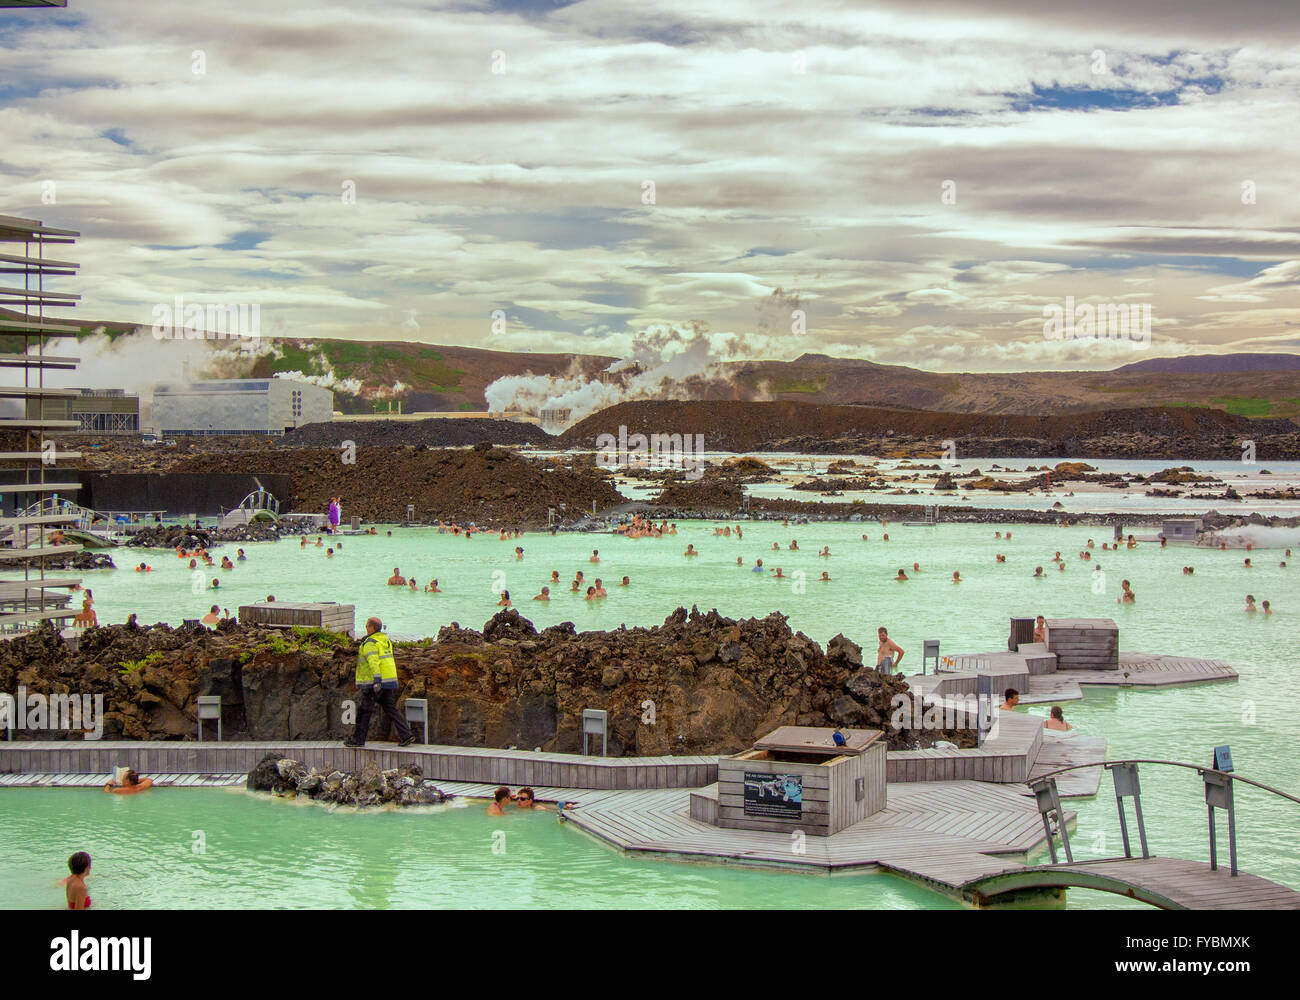 Península de Reykjanes, al suroeste de Islandia, Islandia. 5 ago, 2015. Los visitantes se bañan en el famoso Blue Lagoon Spa Geotermal situado en un campo de lava en GrindavÃ-k en la península de Reykjanes, al suroeste de Islandia. Las cálidas aguas son ricas en minerales y bañarse aquí es reputado para ayudar a personas con enfermedades de la piel. La laguna artificial está alimentado por la salida de la planta de energía geotérmica Svartsengi cercanos. Un destino turístico favorito, es uno de los lugares más visitados de Islandia, donde el turismo se ha convertido en un creciente sector de la economía. © Arnold Drapkin/Zuma alambre/Alamy Live News Foto de stock